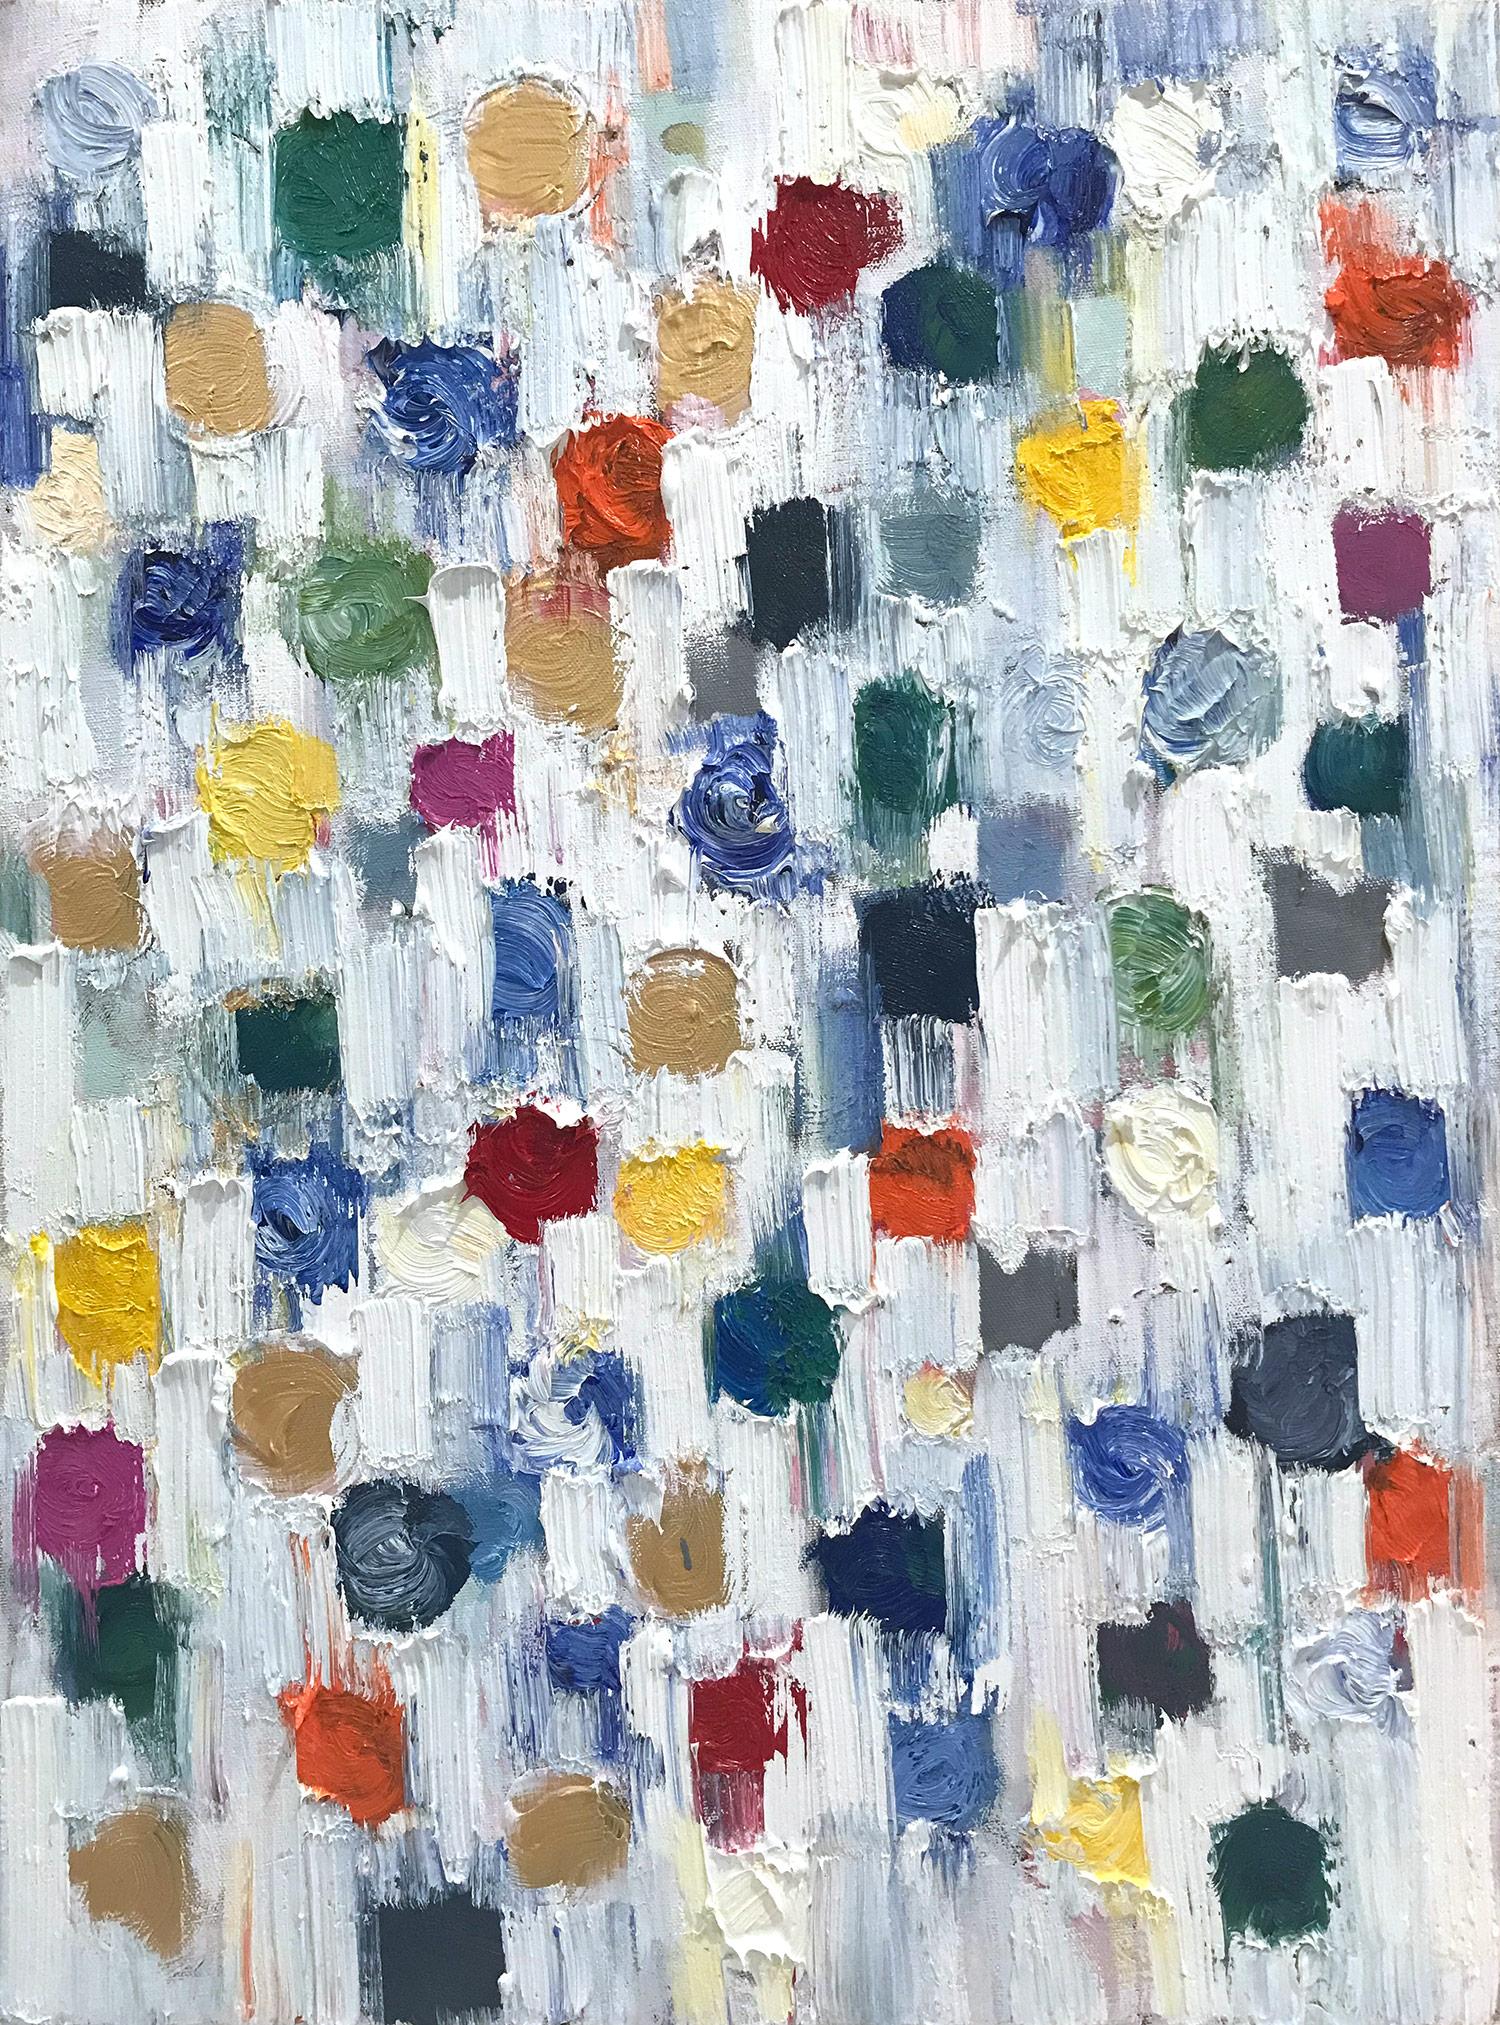 Abstract Painting Cindy Shaoul - "Dripping Dots - Capri" Peinture à l'huile abstraite colorée sur toile